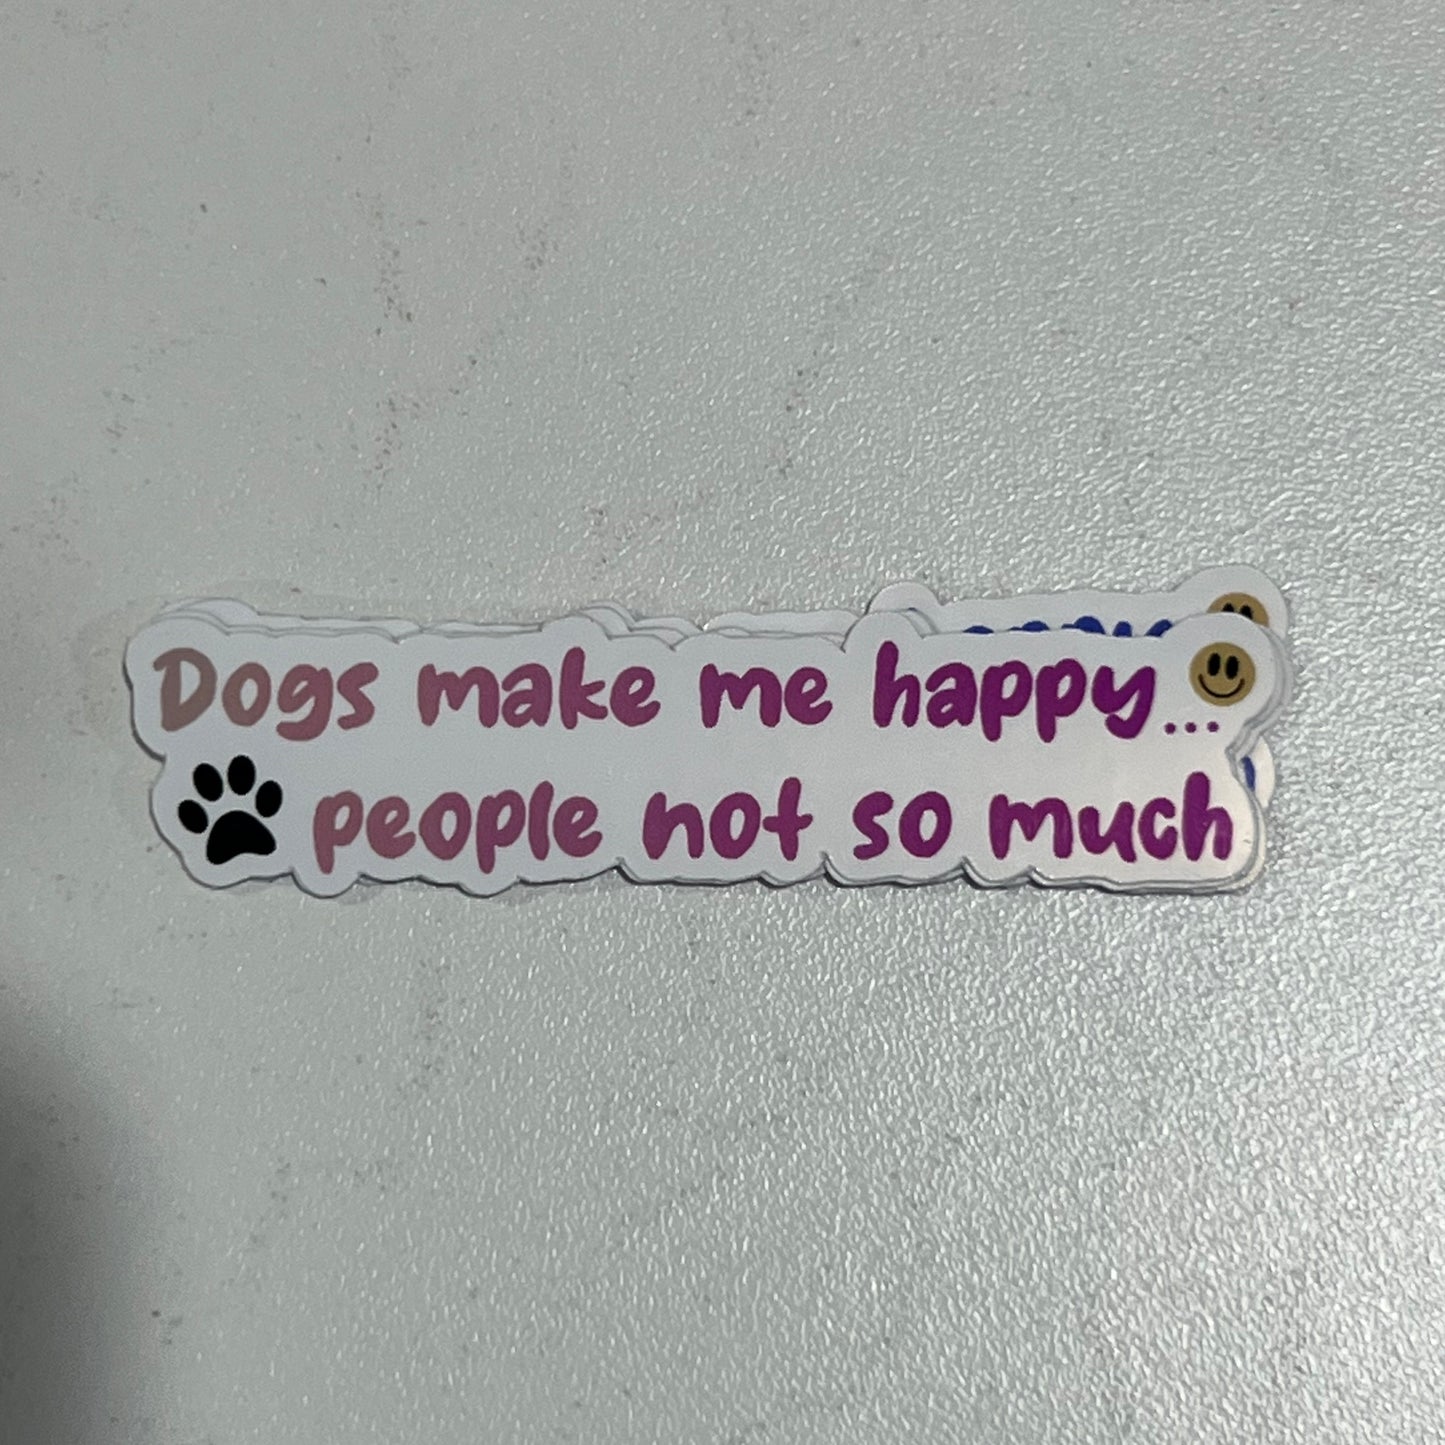 Dogs make me happy waterproof sticker